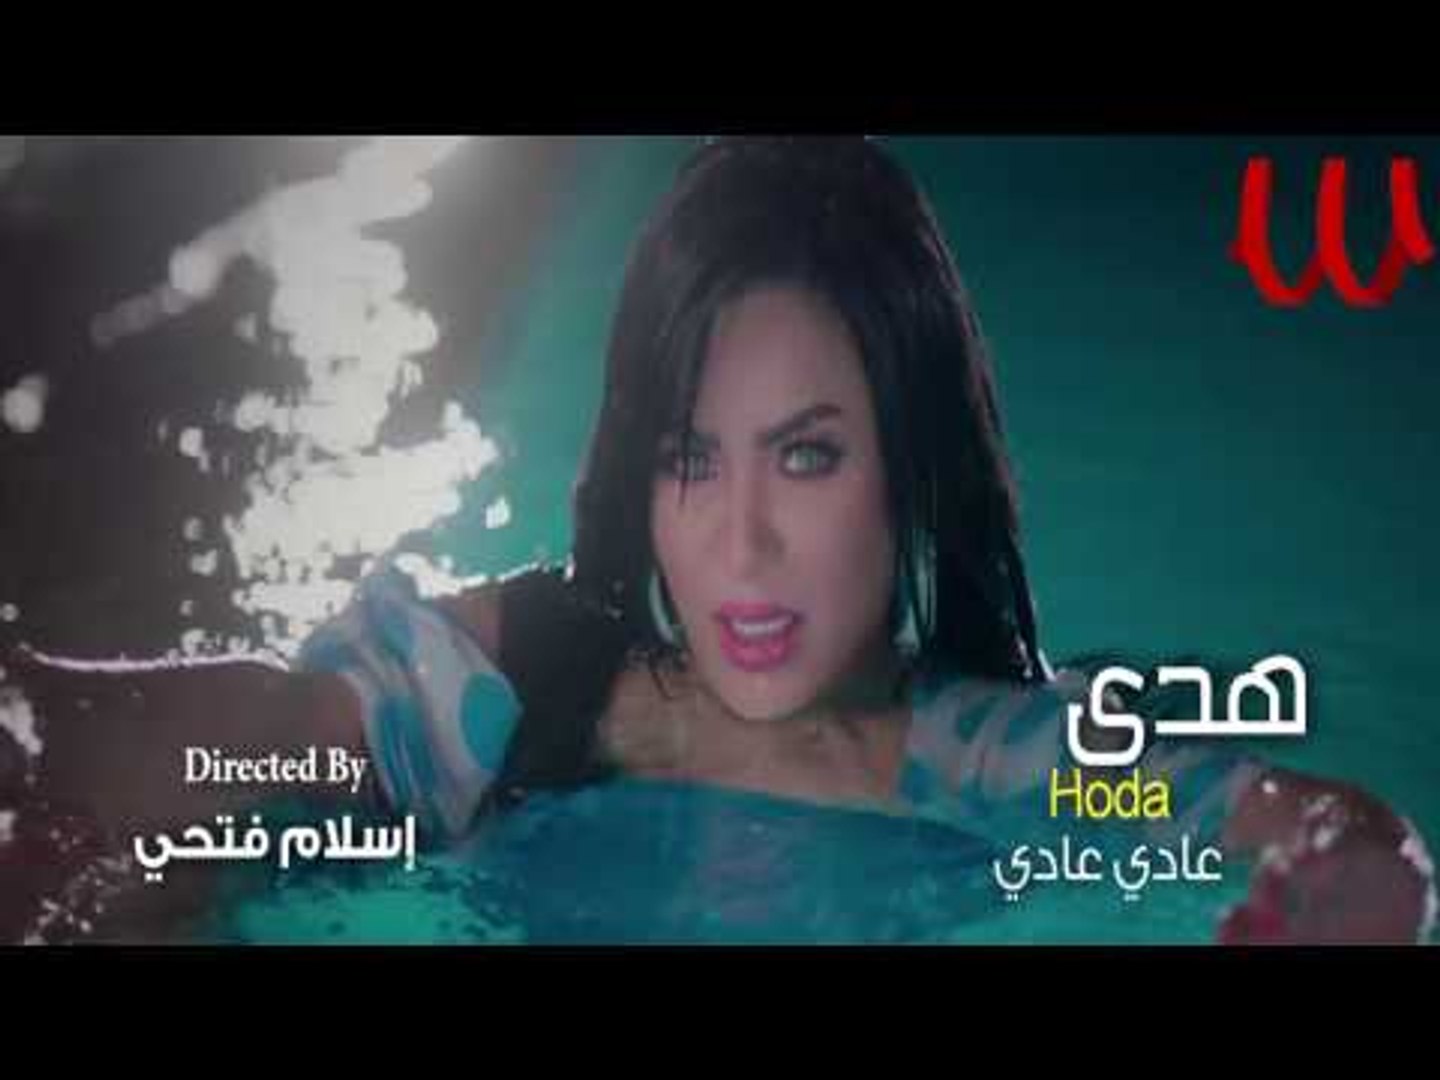 Hoda - Promo 3ady 3ady 2017 / هدي - برومو عادي عادي 2017 - فيديو Dailymotion